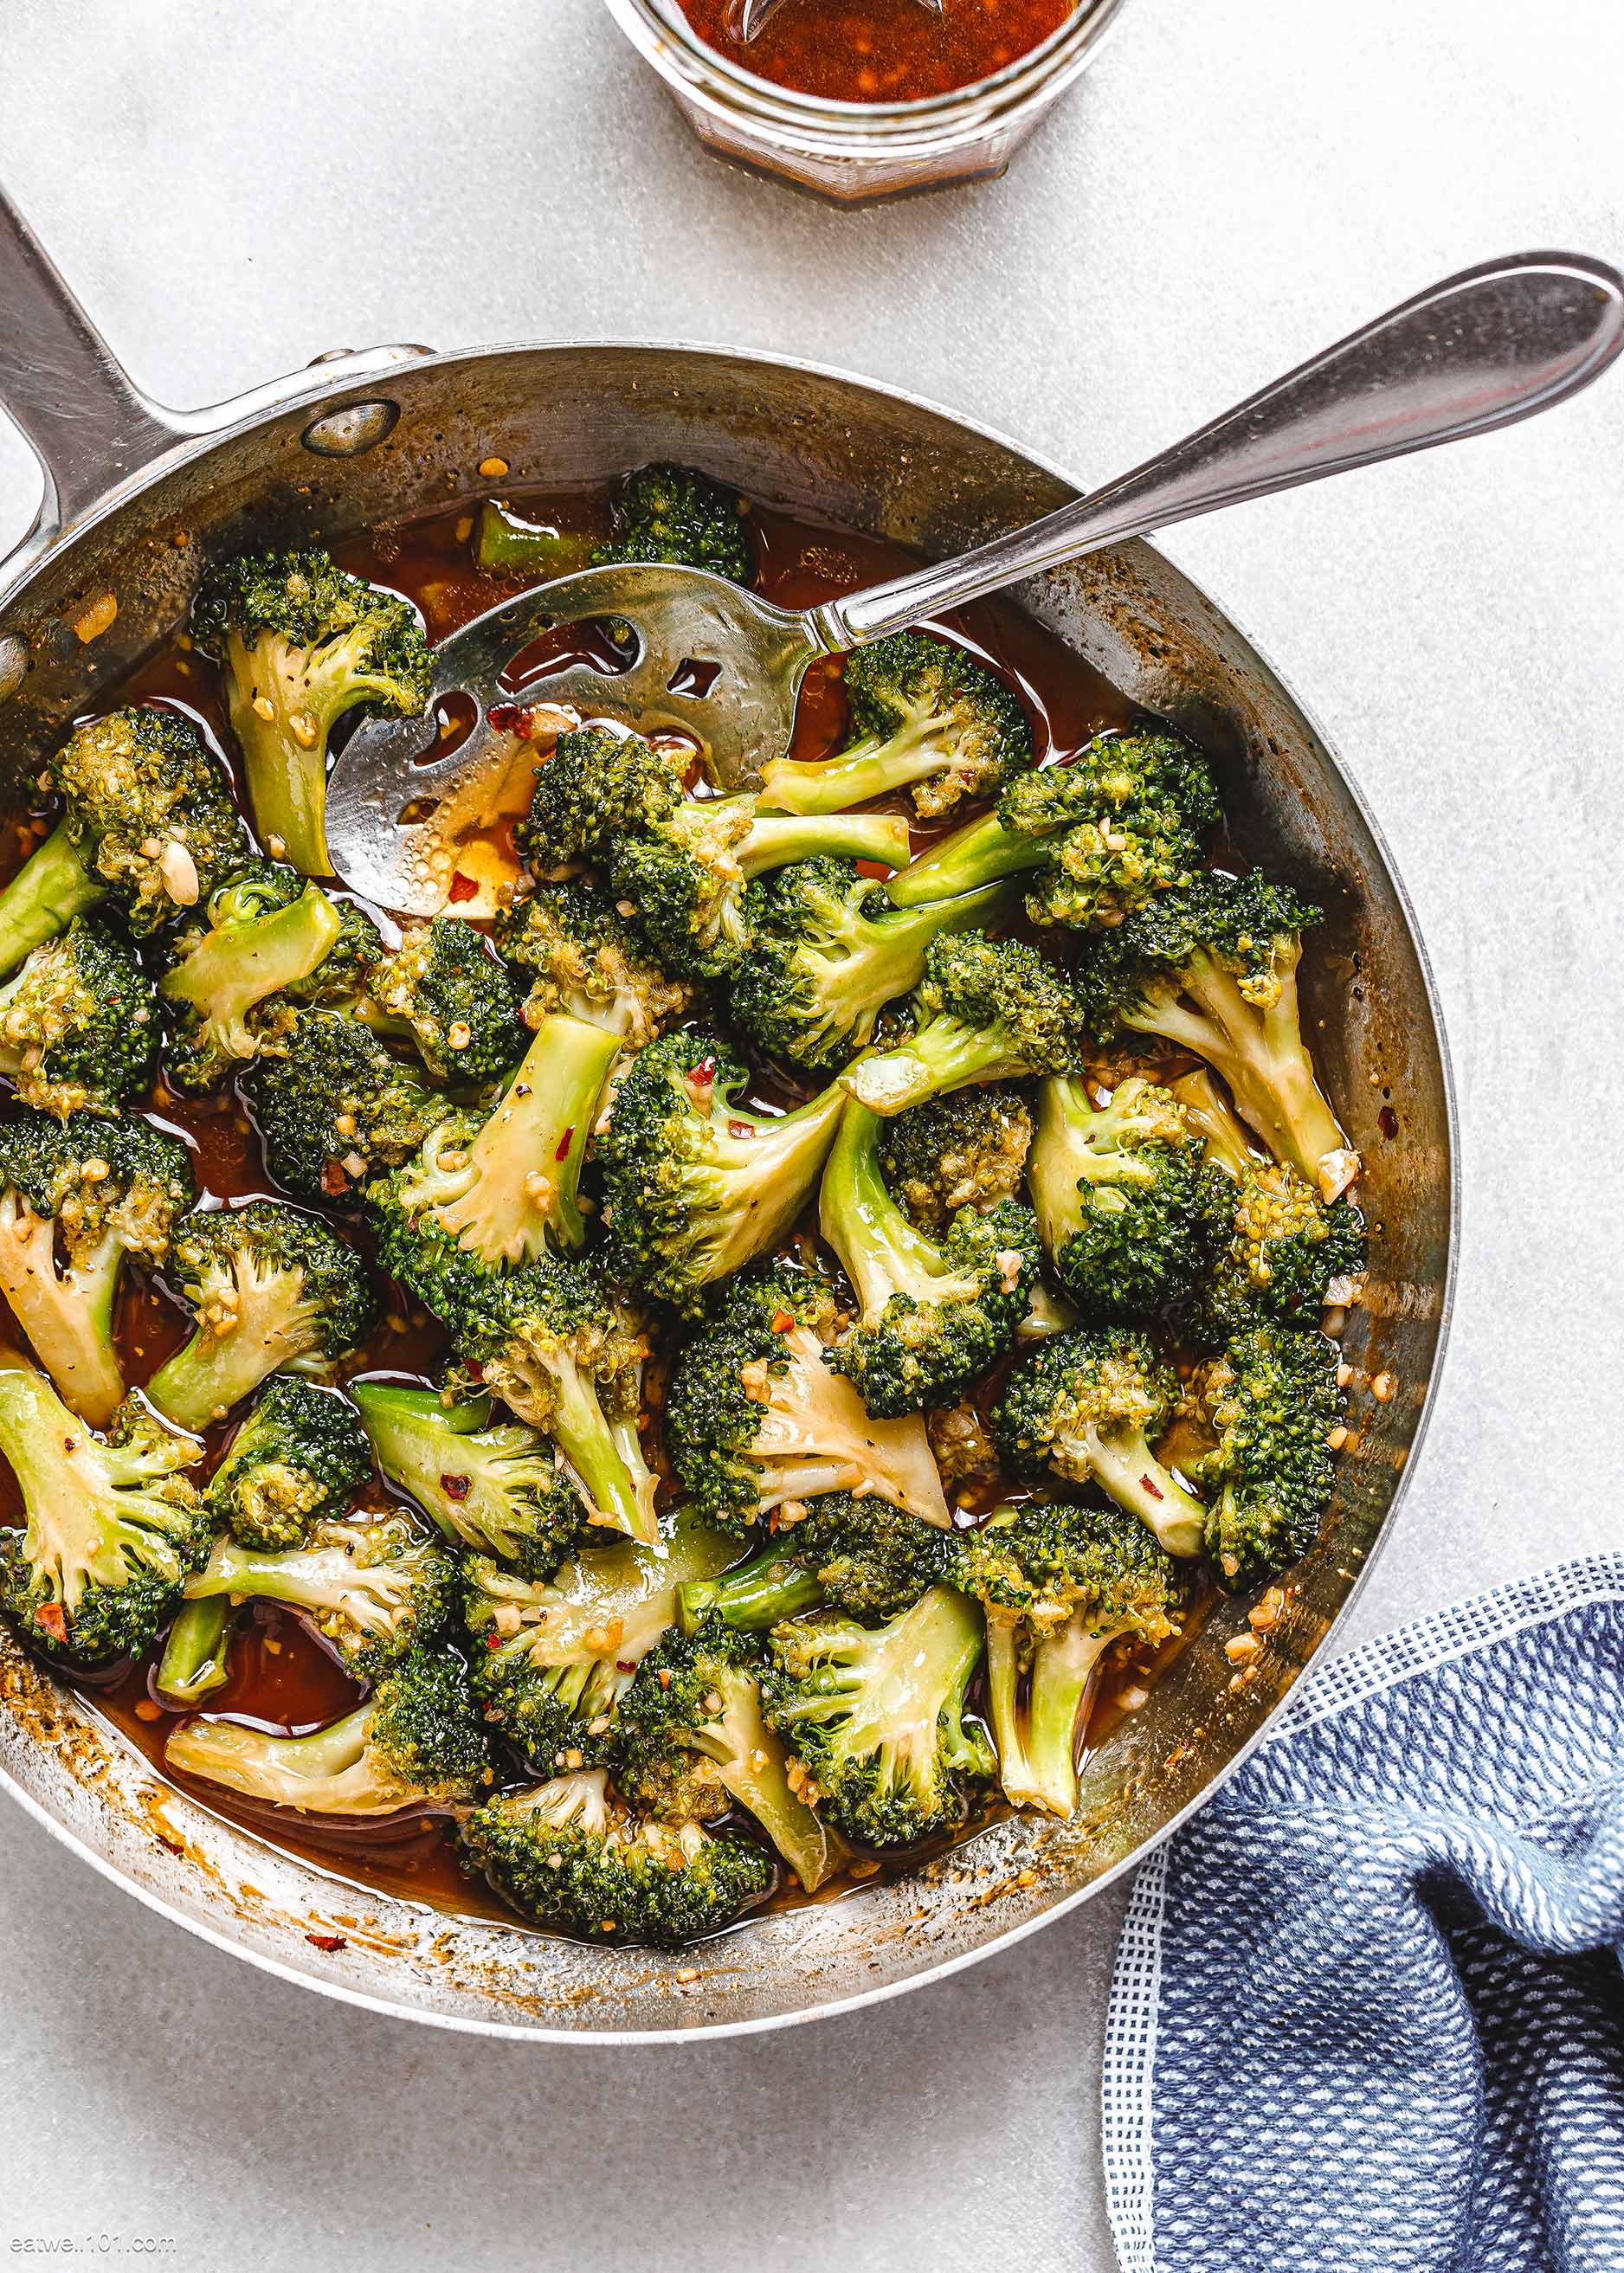 Broccoli Stir-Fry Recipe with Garlic Sauce – How Stir Fry Broccoli